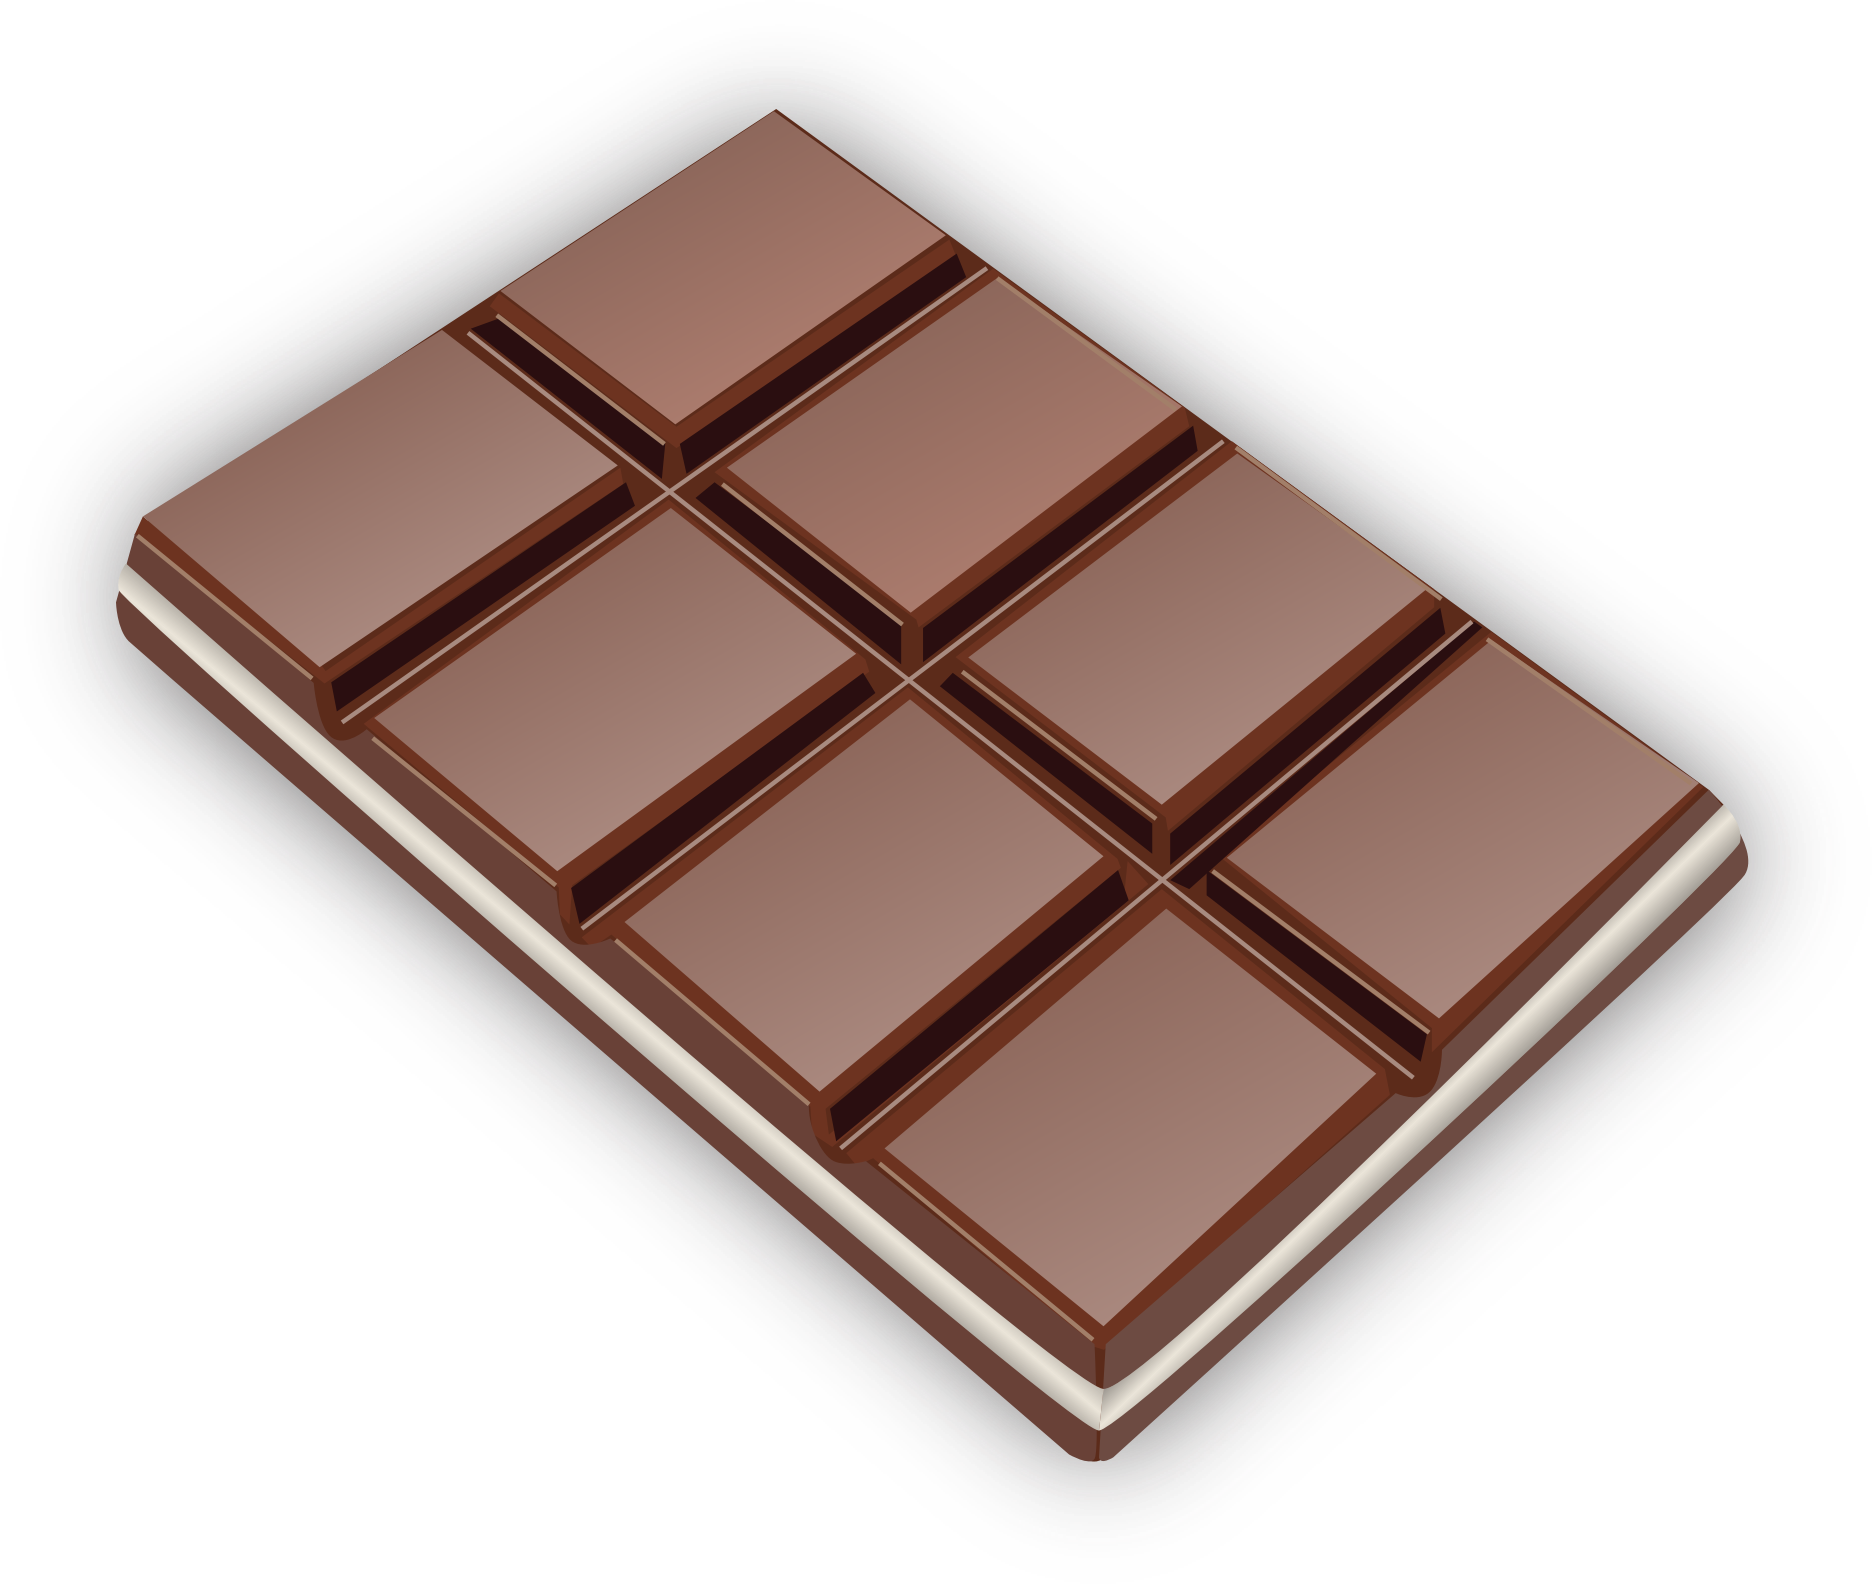 Chocolate Bar Hd Png Transparent Chocolate Bar Hdpng Images Pluspng